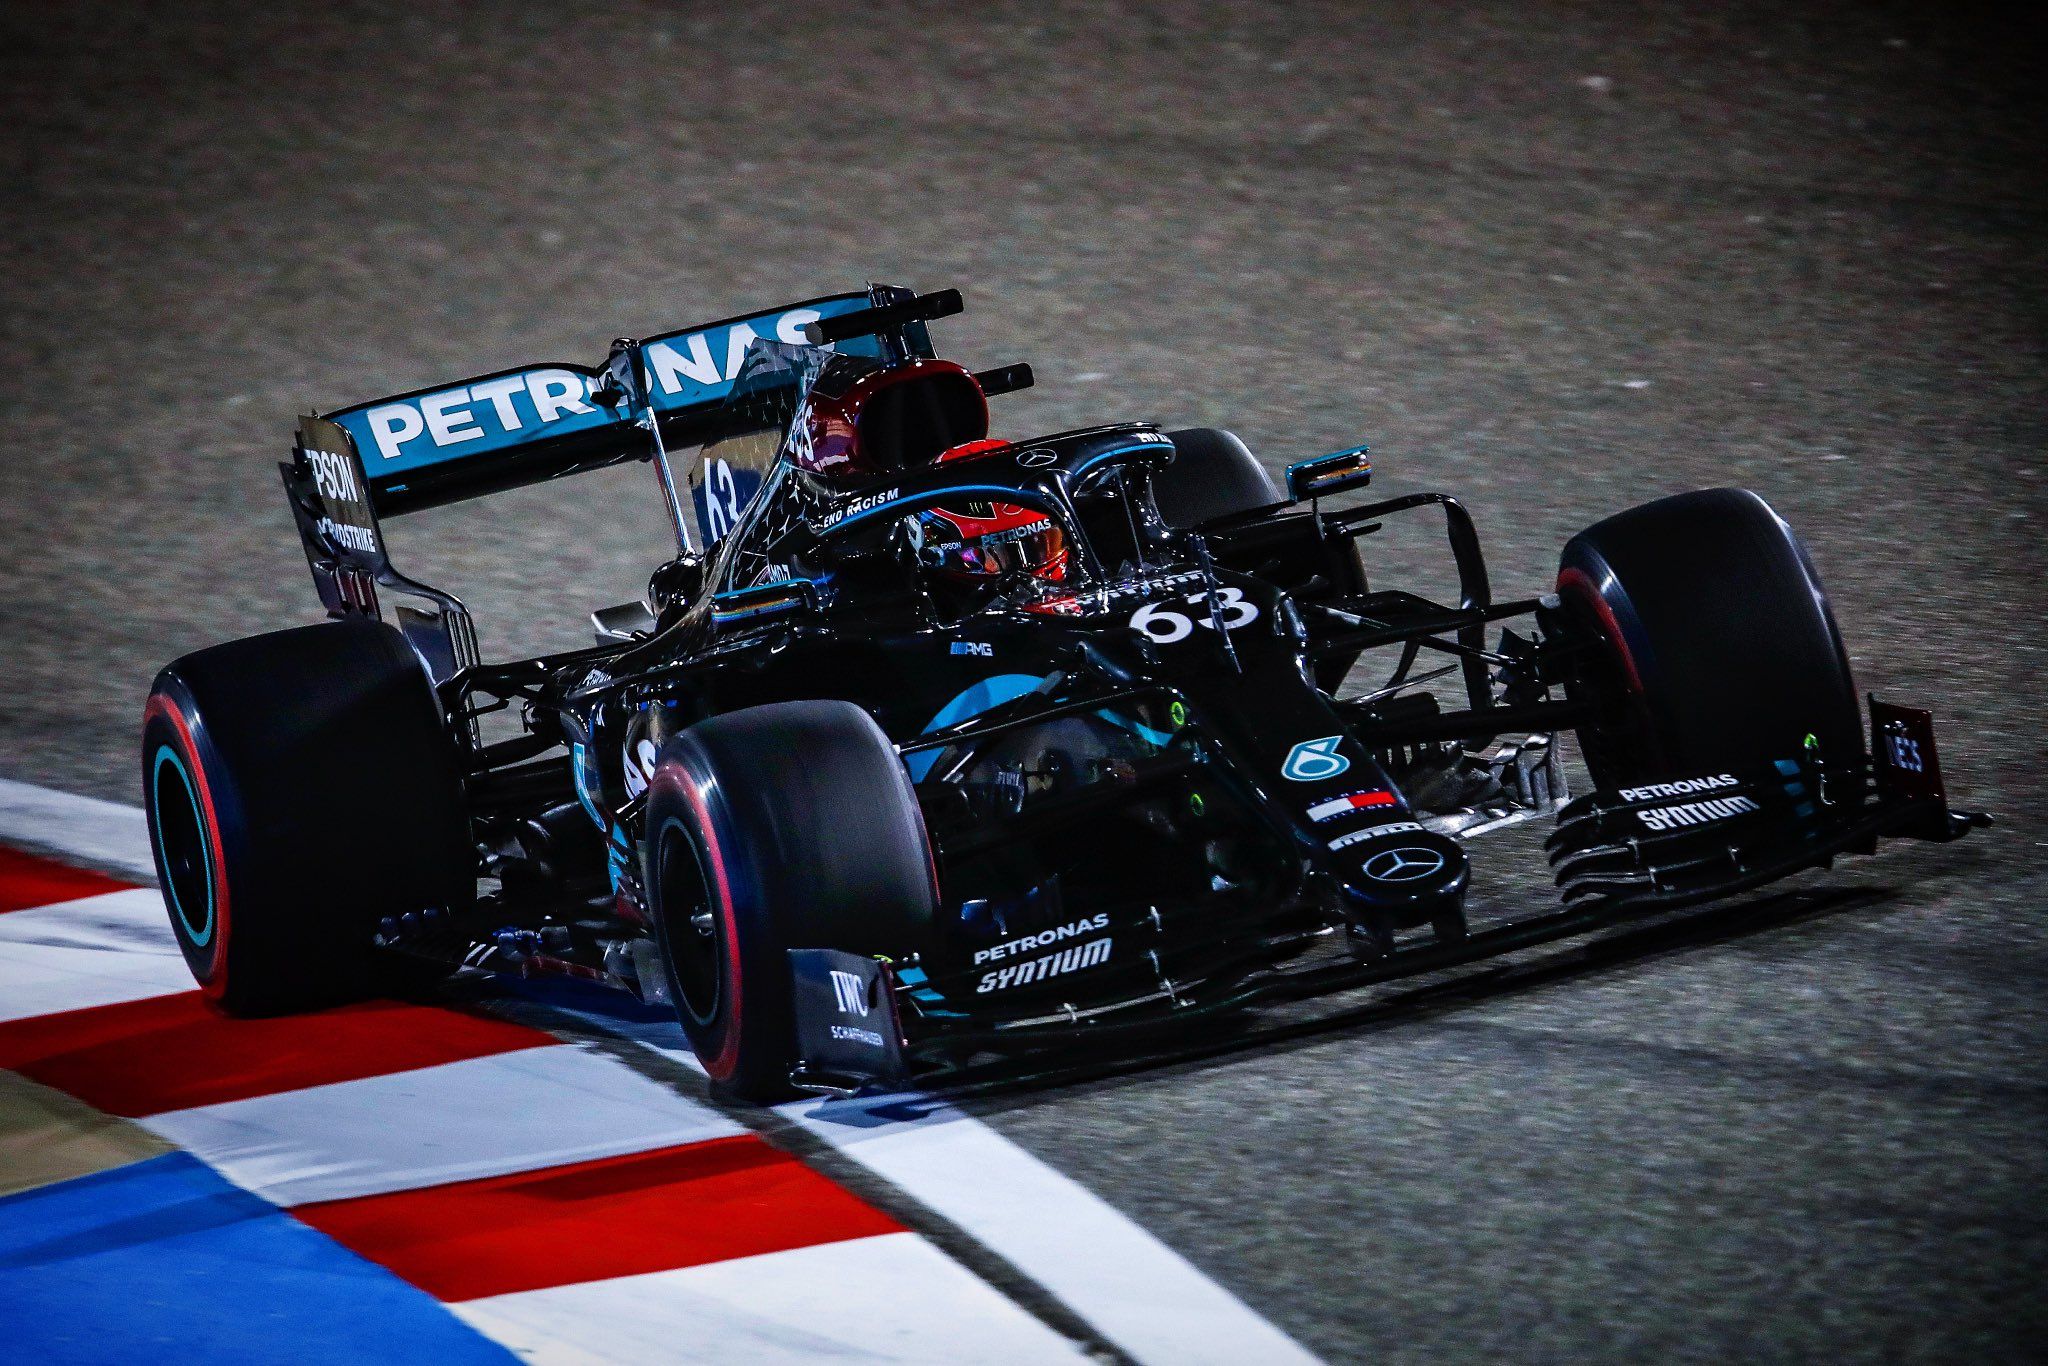 George Russell saat memperkuat tim Mercedes-AMG Petronas dalam sesi latihan bebas F1 GP Sakhir 2020 yang digelar di outer track Sirkuit Sakhir, Bahrain, pada Jumat (4/12/2020) malam waktu setempat.